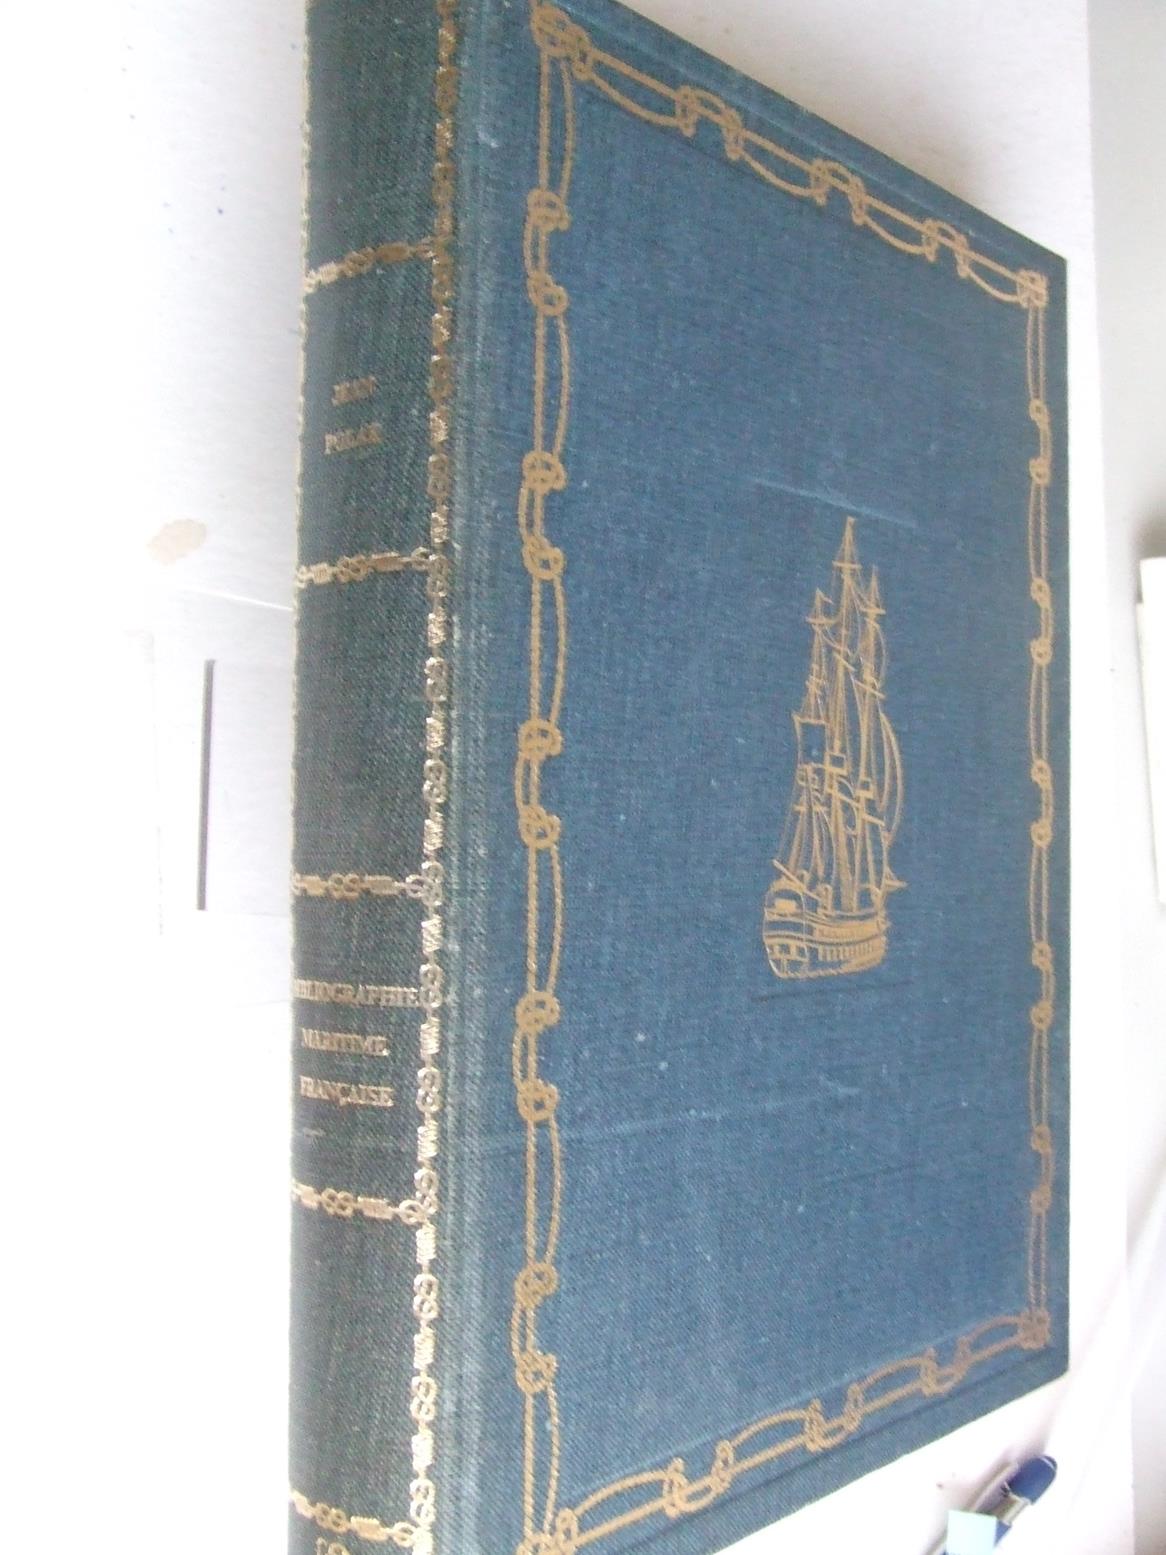 Bibliographie Maritime Francaise, depuis les temps les plus reculés jusqu'a 1914